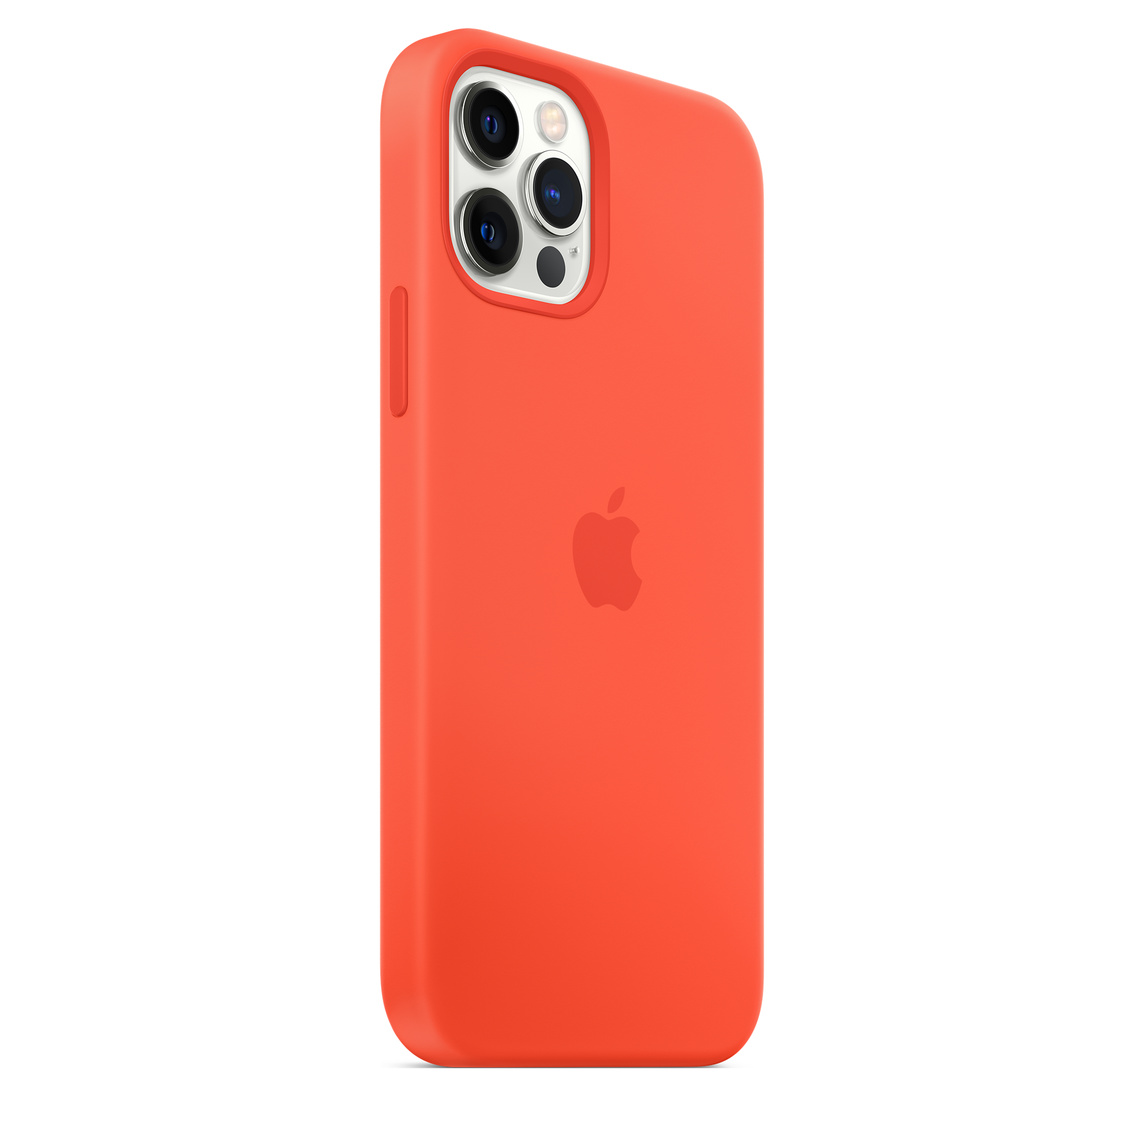 Фото — Чехол Apple MagSafe для iPhone 12/12 Pro, cиликон, «солнечный апельсин»